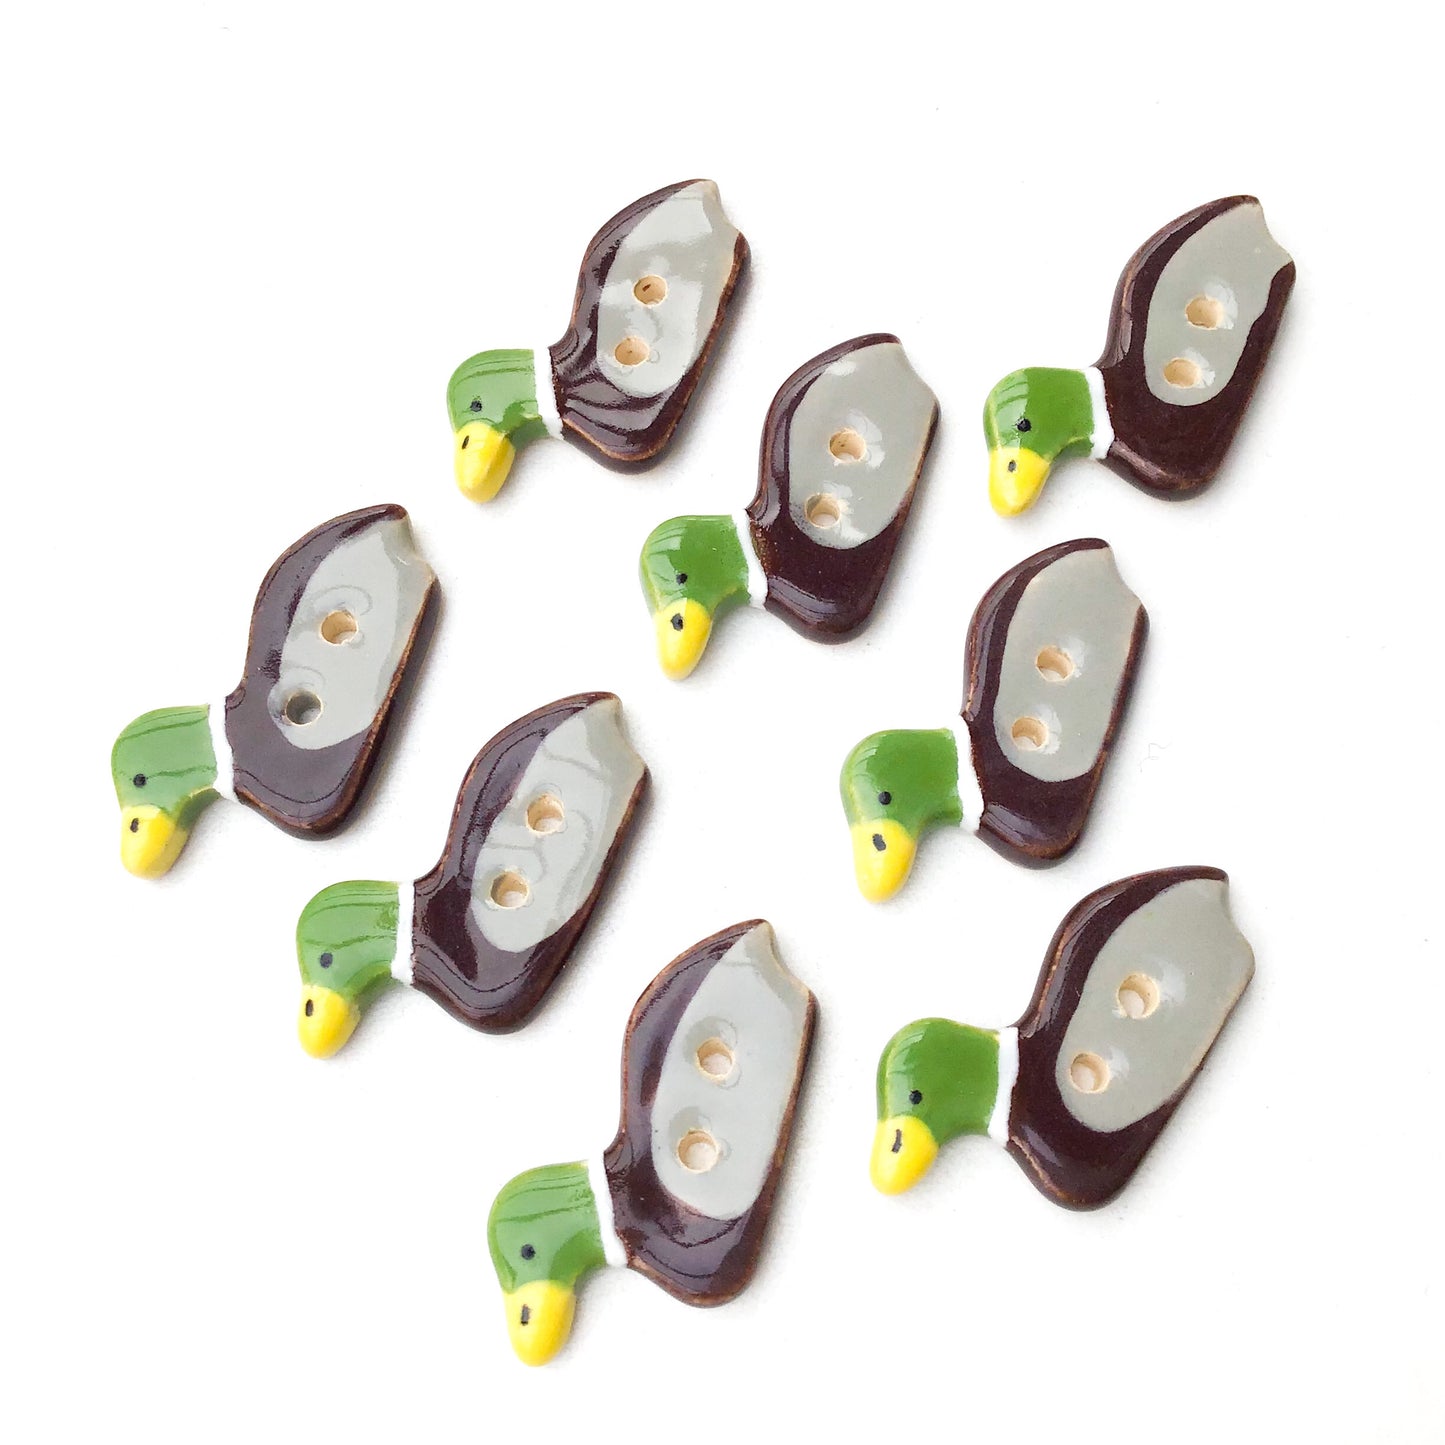 Mallard Duck Buttons - Ceramic Duck Buttons  (ws-125)